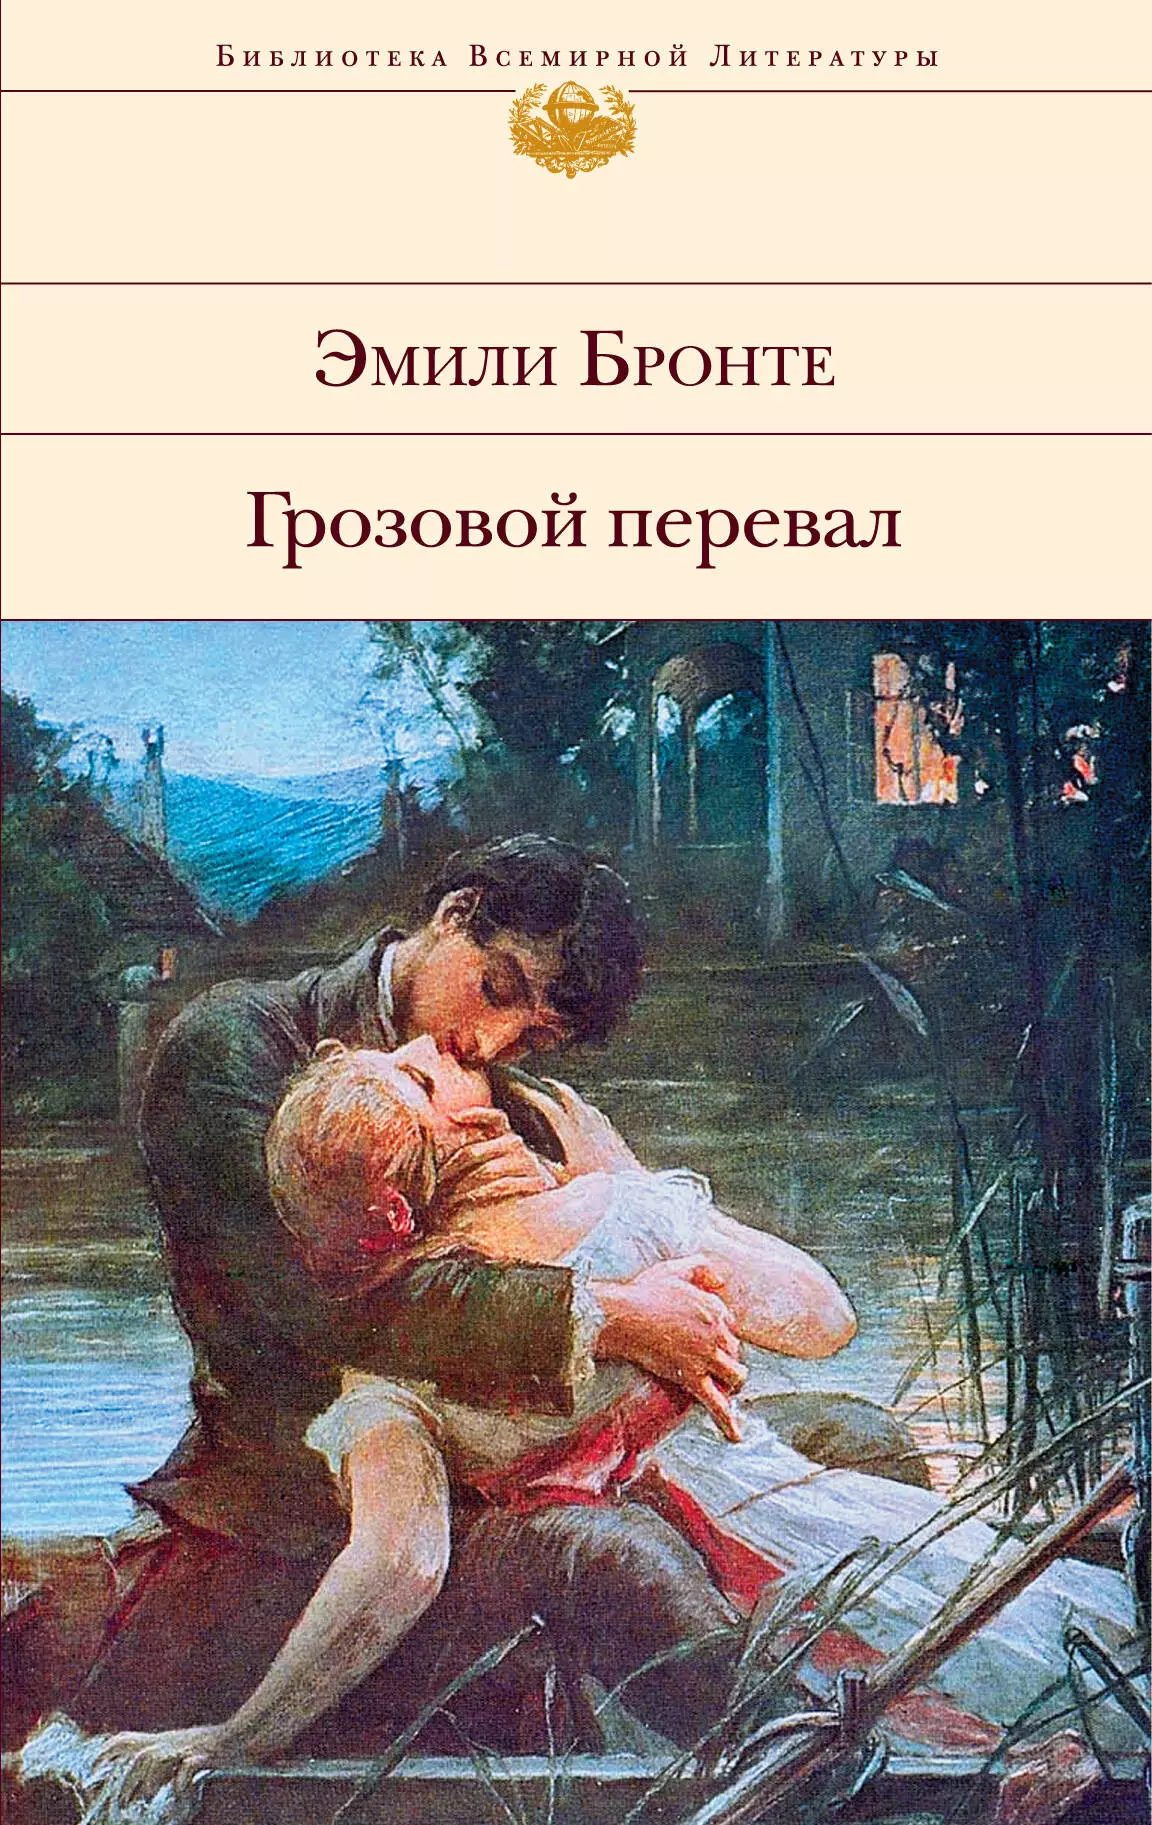 Бронте Эмили Джейн - Грозовой перевал : роман